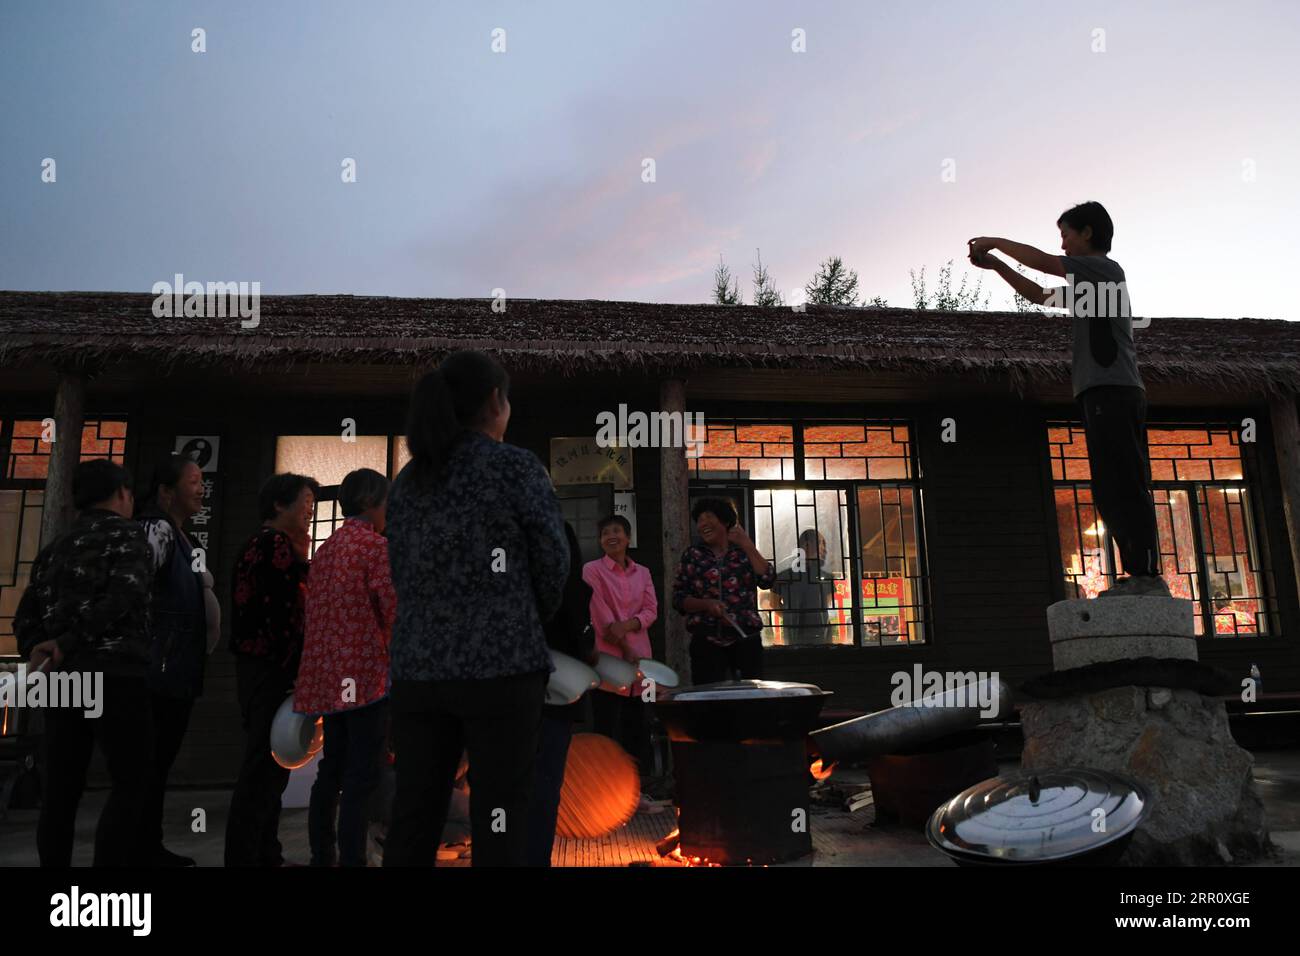 200828 -- HARBIN, 28. August 2020 -- Leng Juzhen R macht Fotos von Dorfbewohnern vor dem Tourismuszentrum in Xiaonanhe Village im Raohe County, nordöstliche chinesische Provinz Heilongjiang, 19. August 2020. Dieses Jahr ist Leng Juzhens fünftes Jahr als Beamter, der Xiaonanhe zur Unterstützung der Armutsbekämpfung zugeteilt wurde. Durch die Bemühungen von Leng und anderen Dorfbediensteten schürten alle von Armut betroffenen Haushalte in Xiaonanhe 2018 die Armut. In den letzten Jahren hat Leng die Dorfbewohner geführt, um den ländlichen Tourismus und landwirtschaftliche Produkte wie Chilisauce, Käfiglose Hühner und zu entwickeln Stockfoto